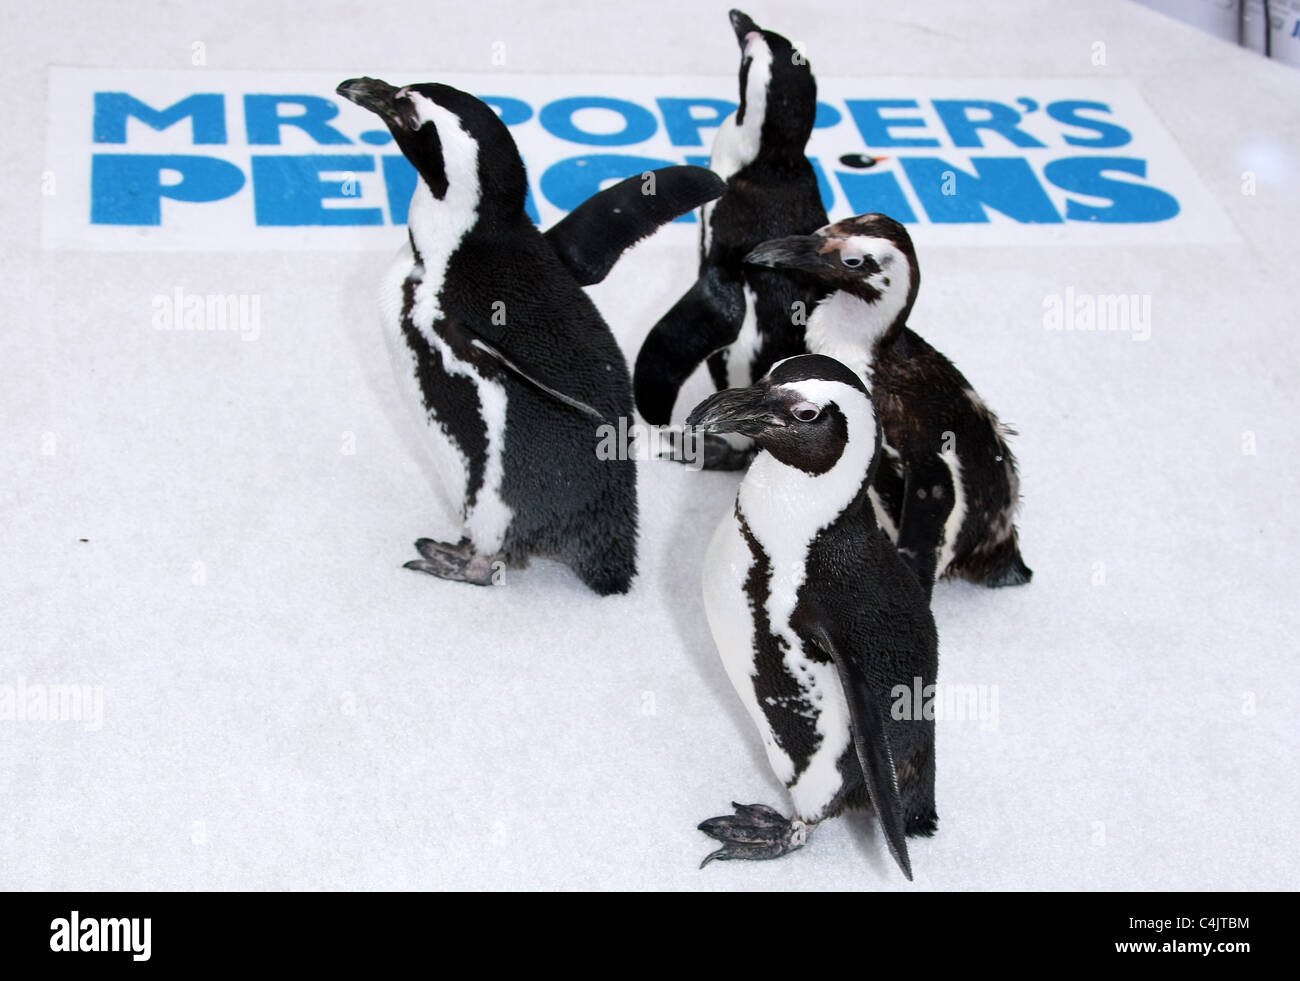 Les pingouins ARRIVENT À LA PREMIERE M. POPPER'S PENGUINS LOS ANGELES PREMIERE HOLLYWOOD LOS ANGELES CALIFORNIA USA 12 Juin 2011 Banque D'Images